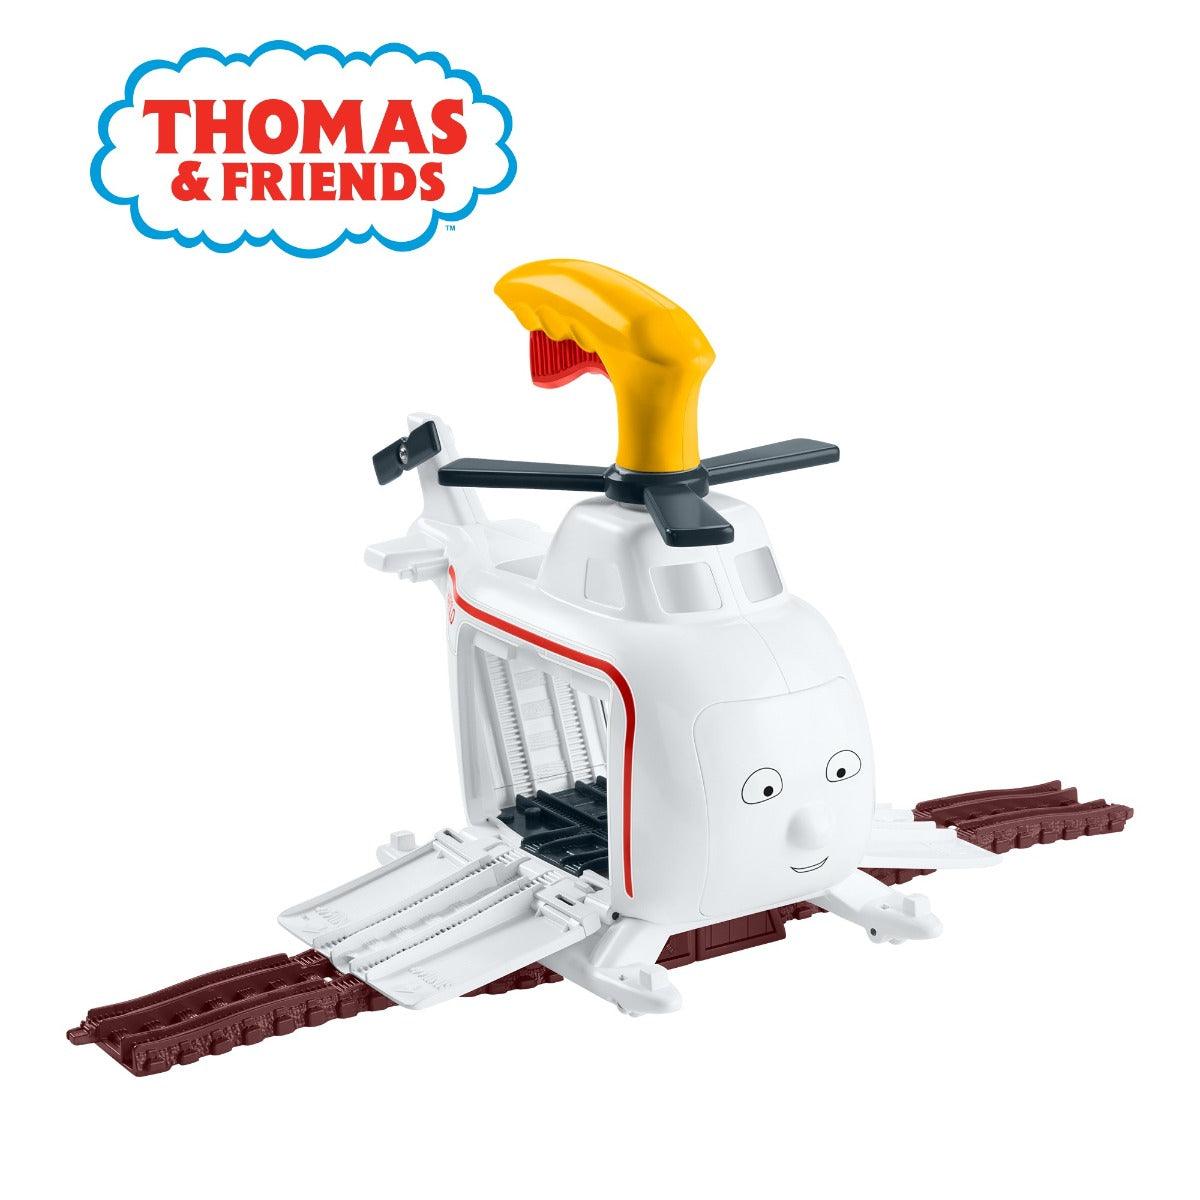 Thomas & Friends Trackmaster Press 'n Spin Harold